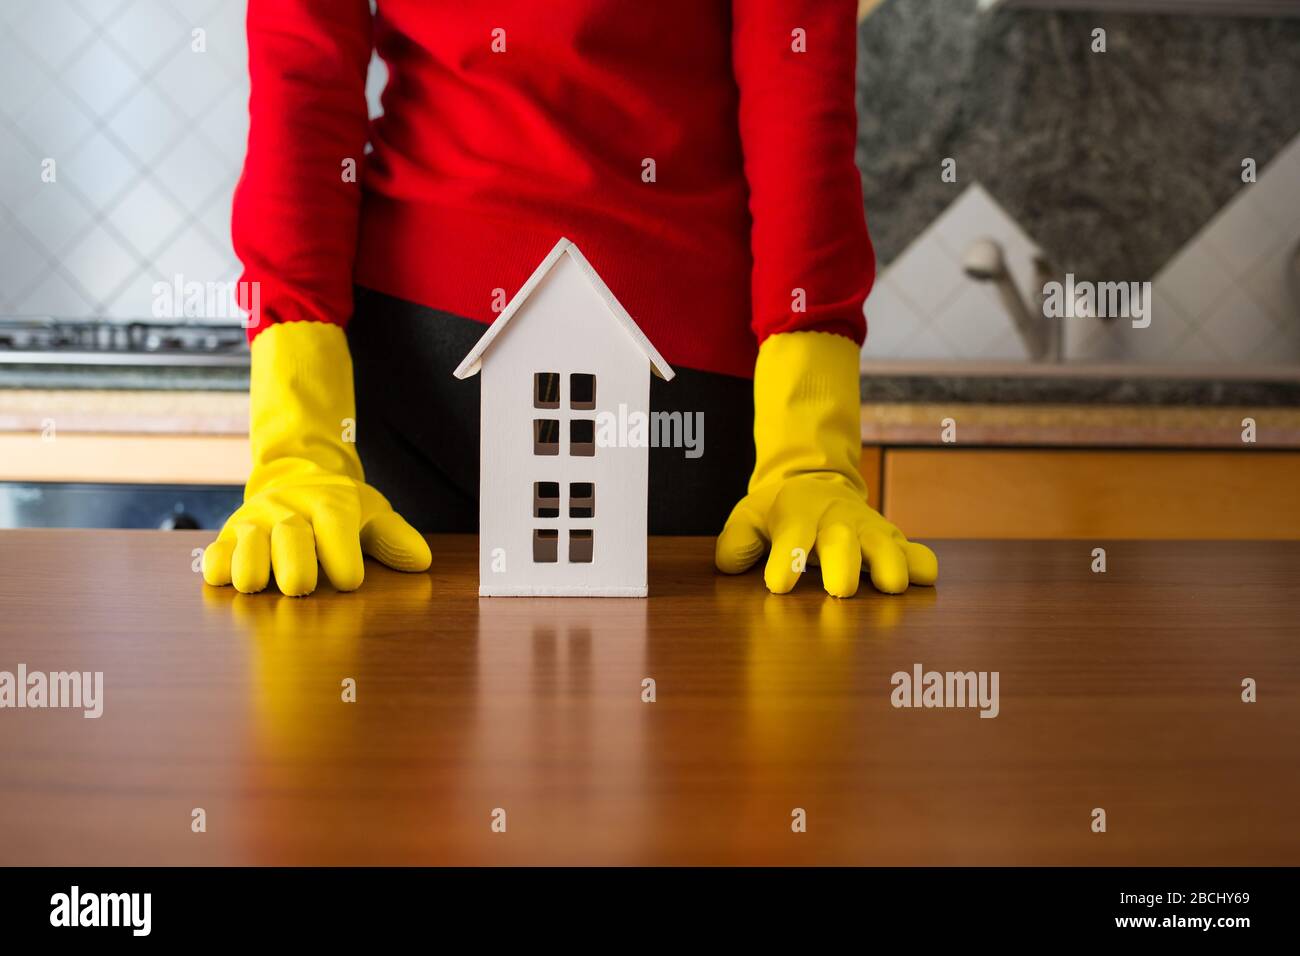 Immagine concettuale di persona con guanti da cucina e una casa modello sopra un tavolo Foto Stock